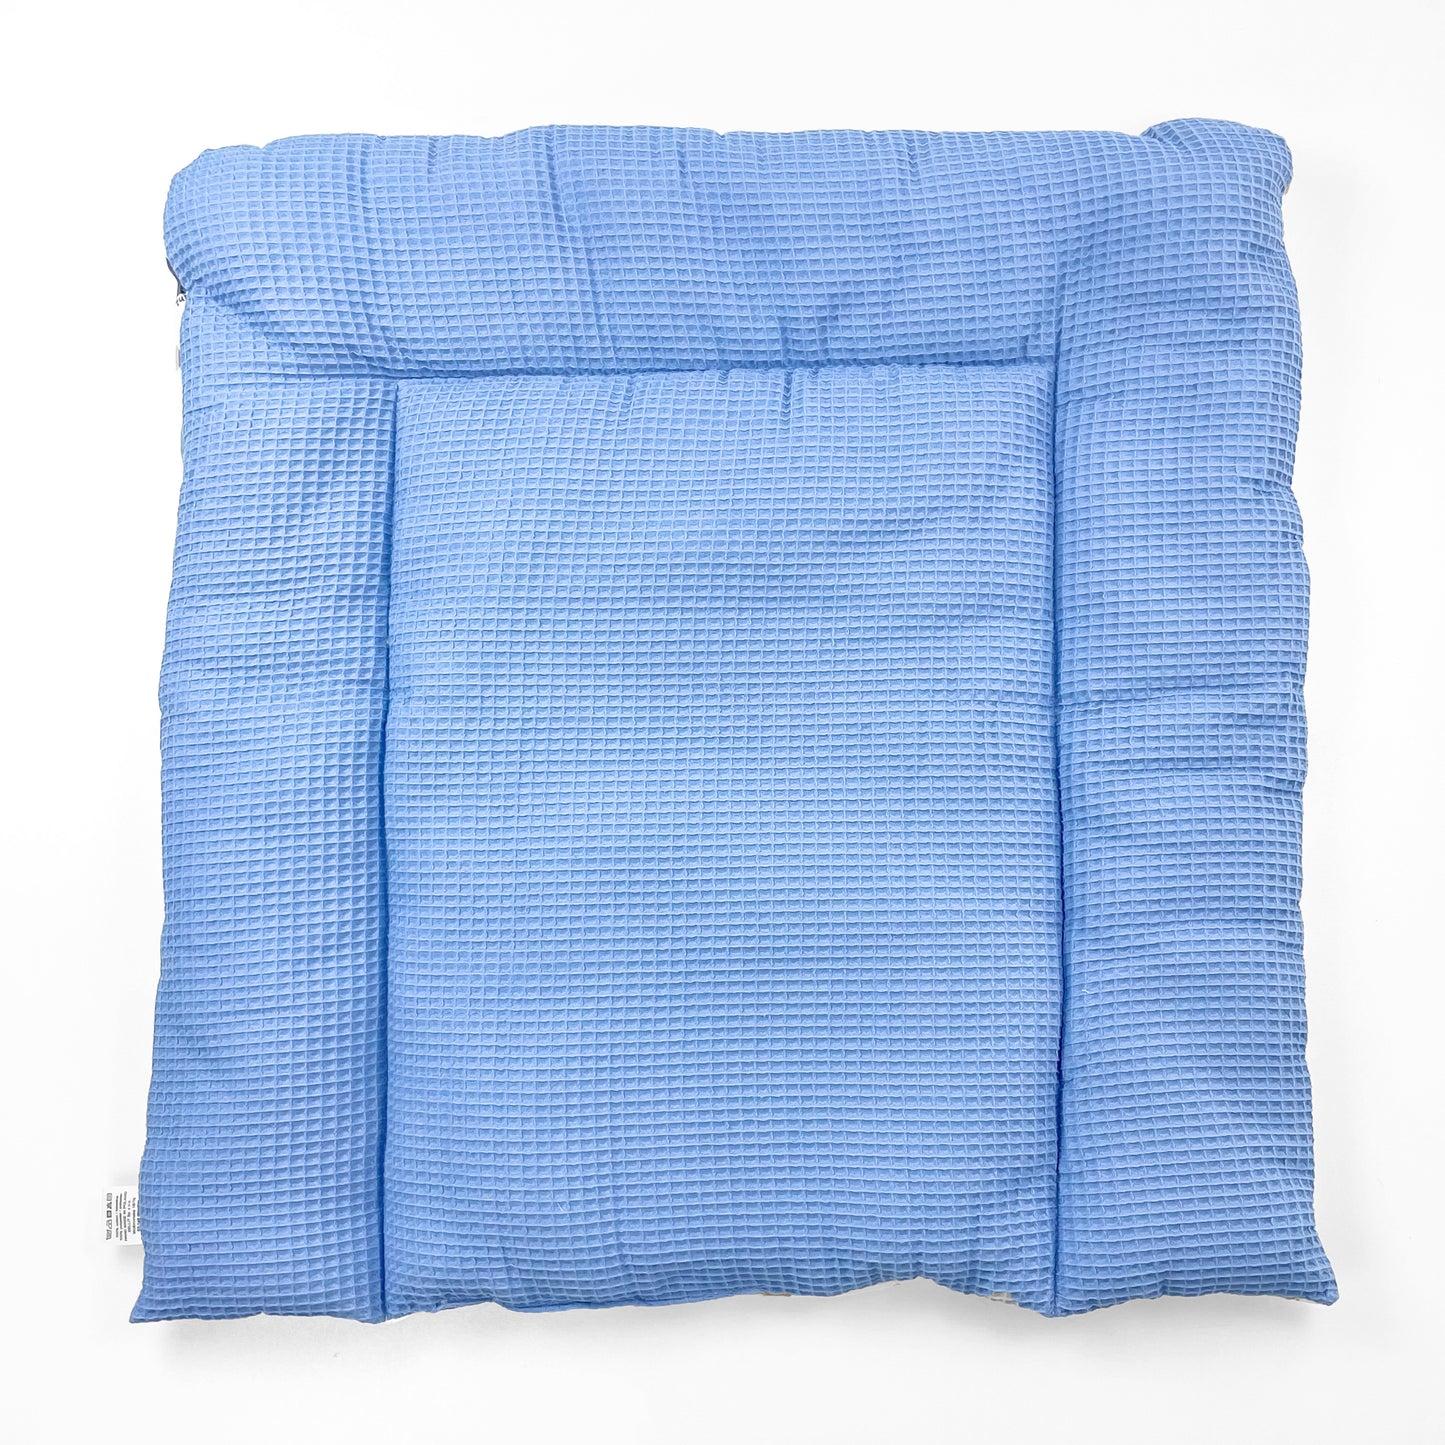 Wickelauflage Wickelunterlage 75x75 cm 100% Baumwolle Blau Weltall Junge Baby Kinder zweiseitig